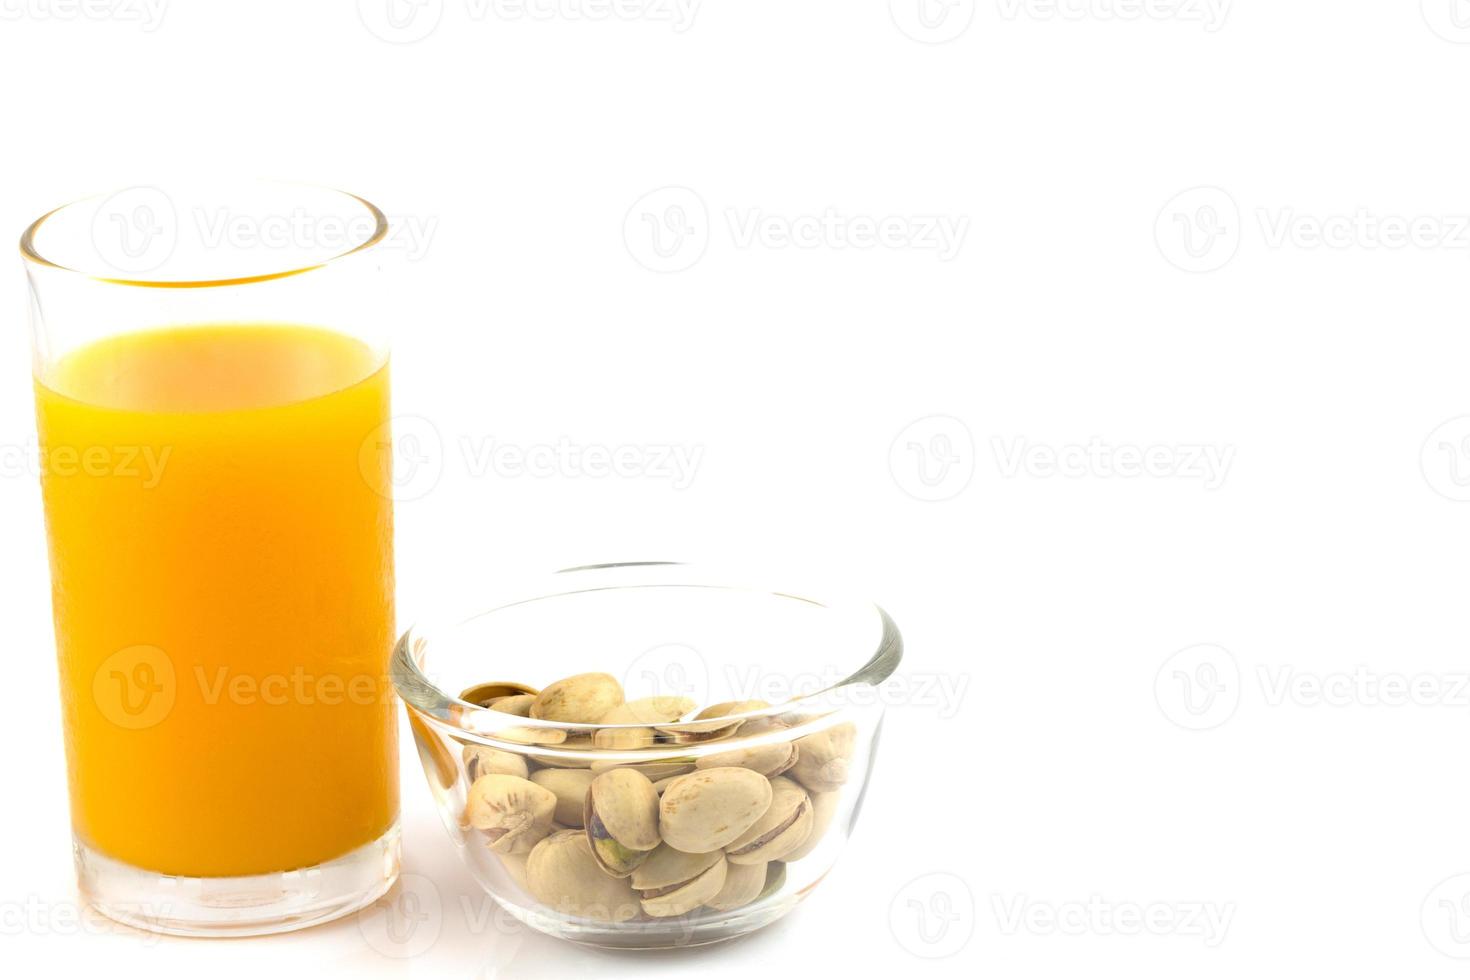 pistacchi in una lastra di vetro e un bicchiere di succo d'arancia isolato su bianco foto